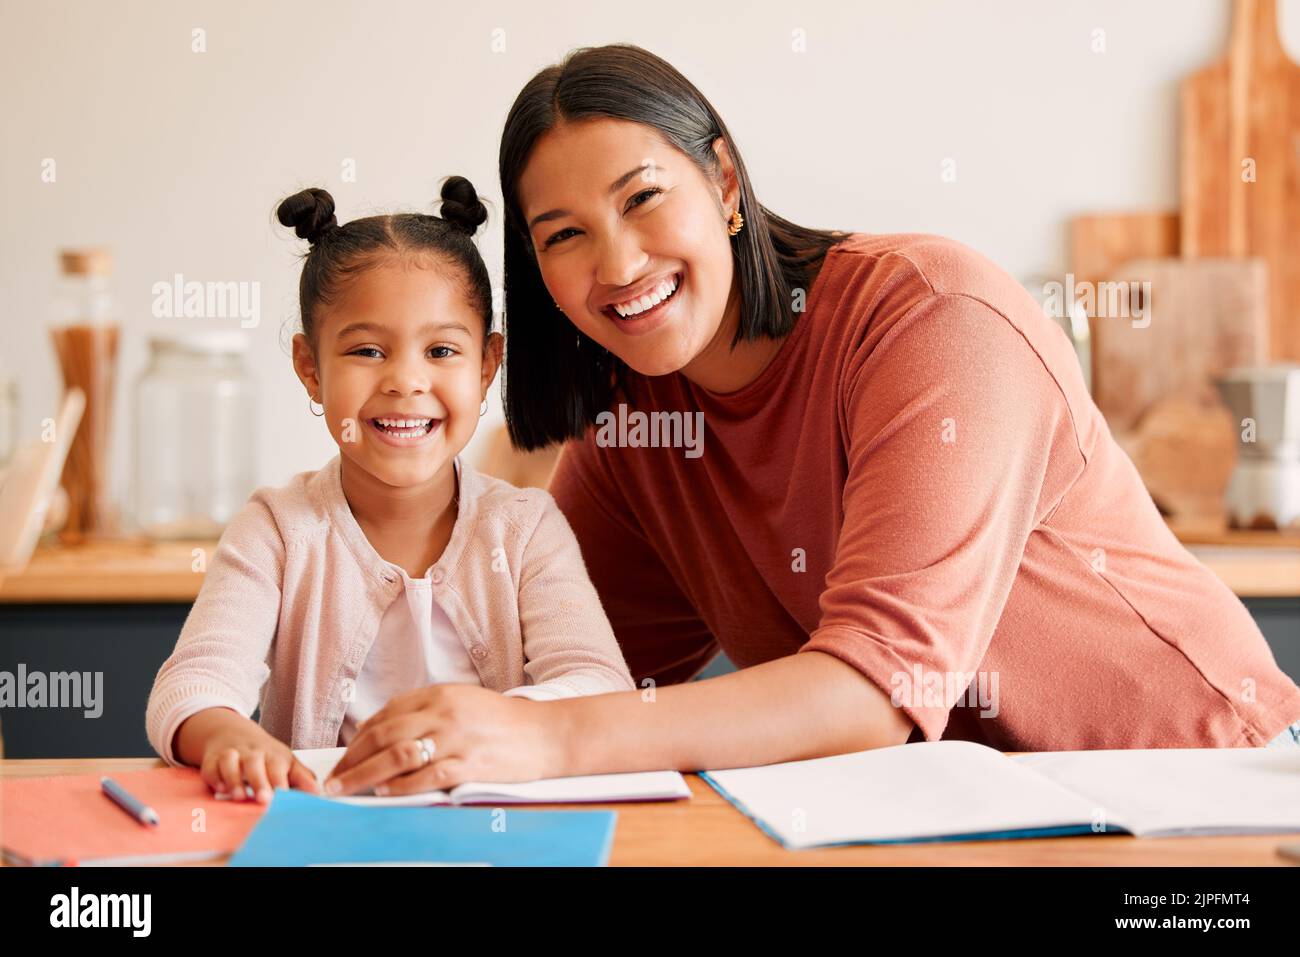 Mère aidant, enseignant et éduquant la fille avec des devoirs à la maison. Portrait de maman et de petite fille heureuse, aimante et souriante, occupée avec l'éducation Banque D'Images